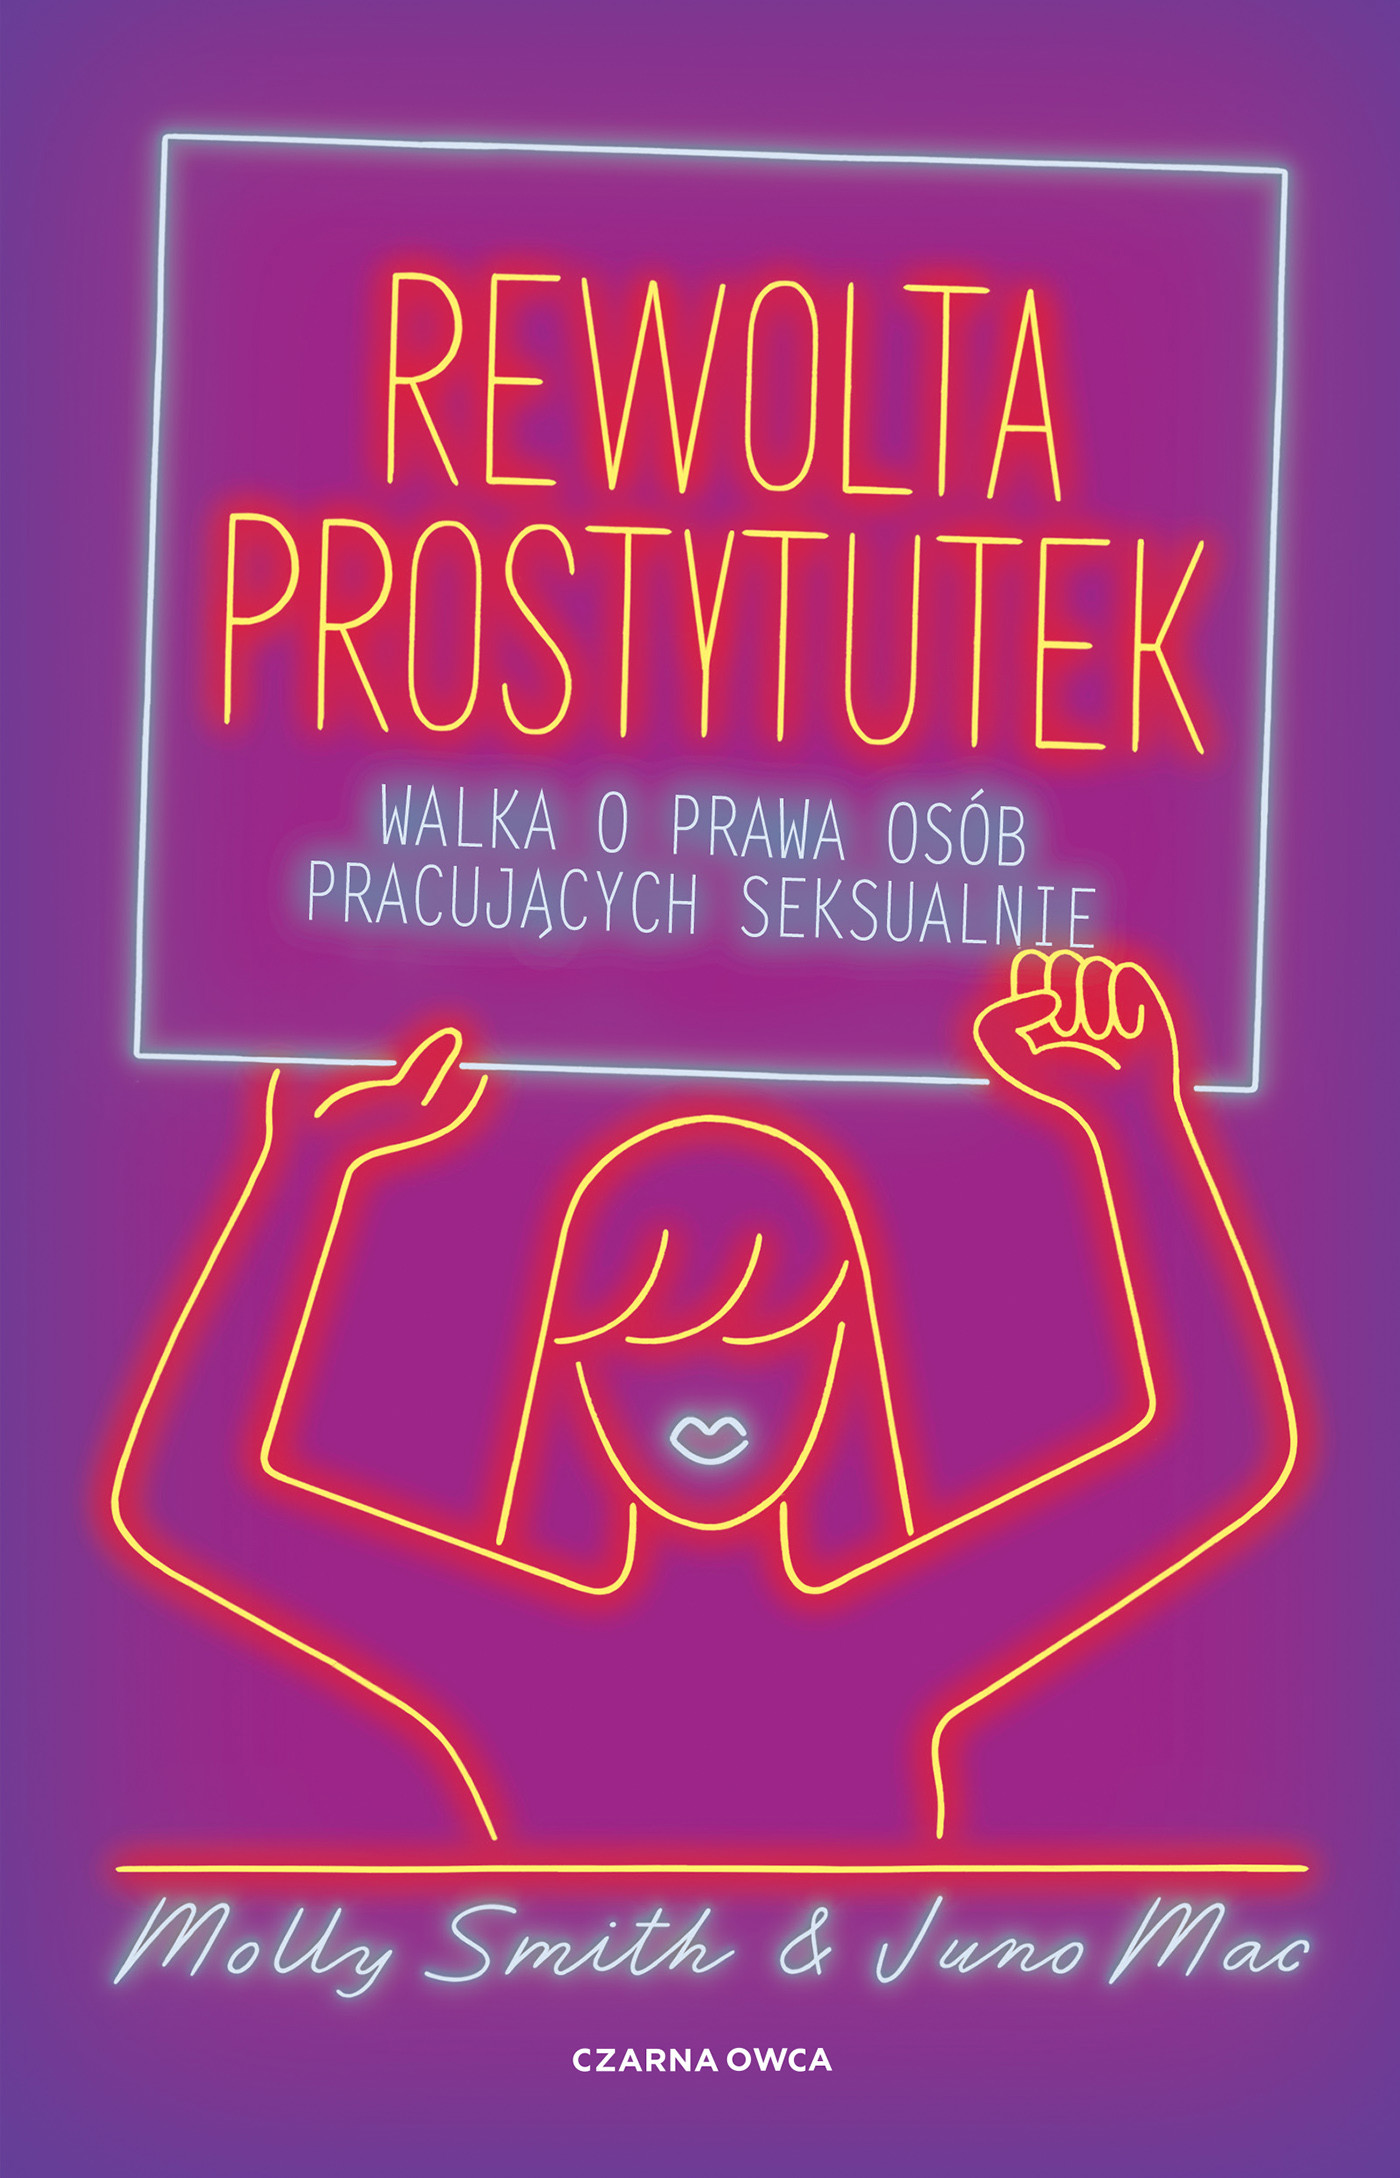 Okładka:Rewolta prostytutek. Walka o prawa osób pracujących seksualnie 